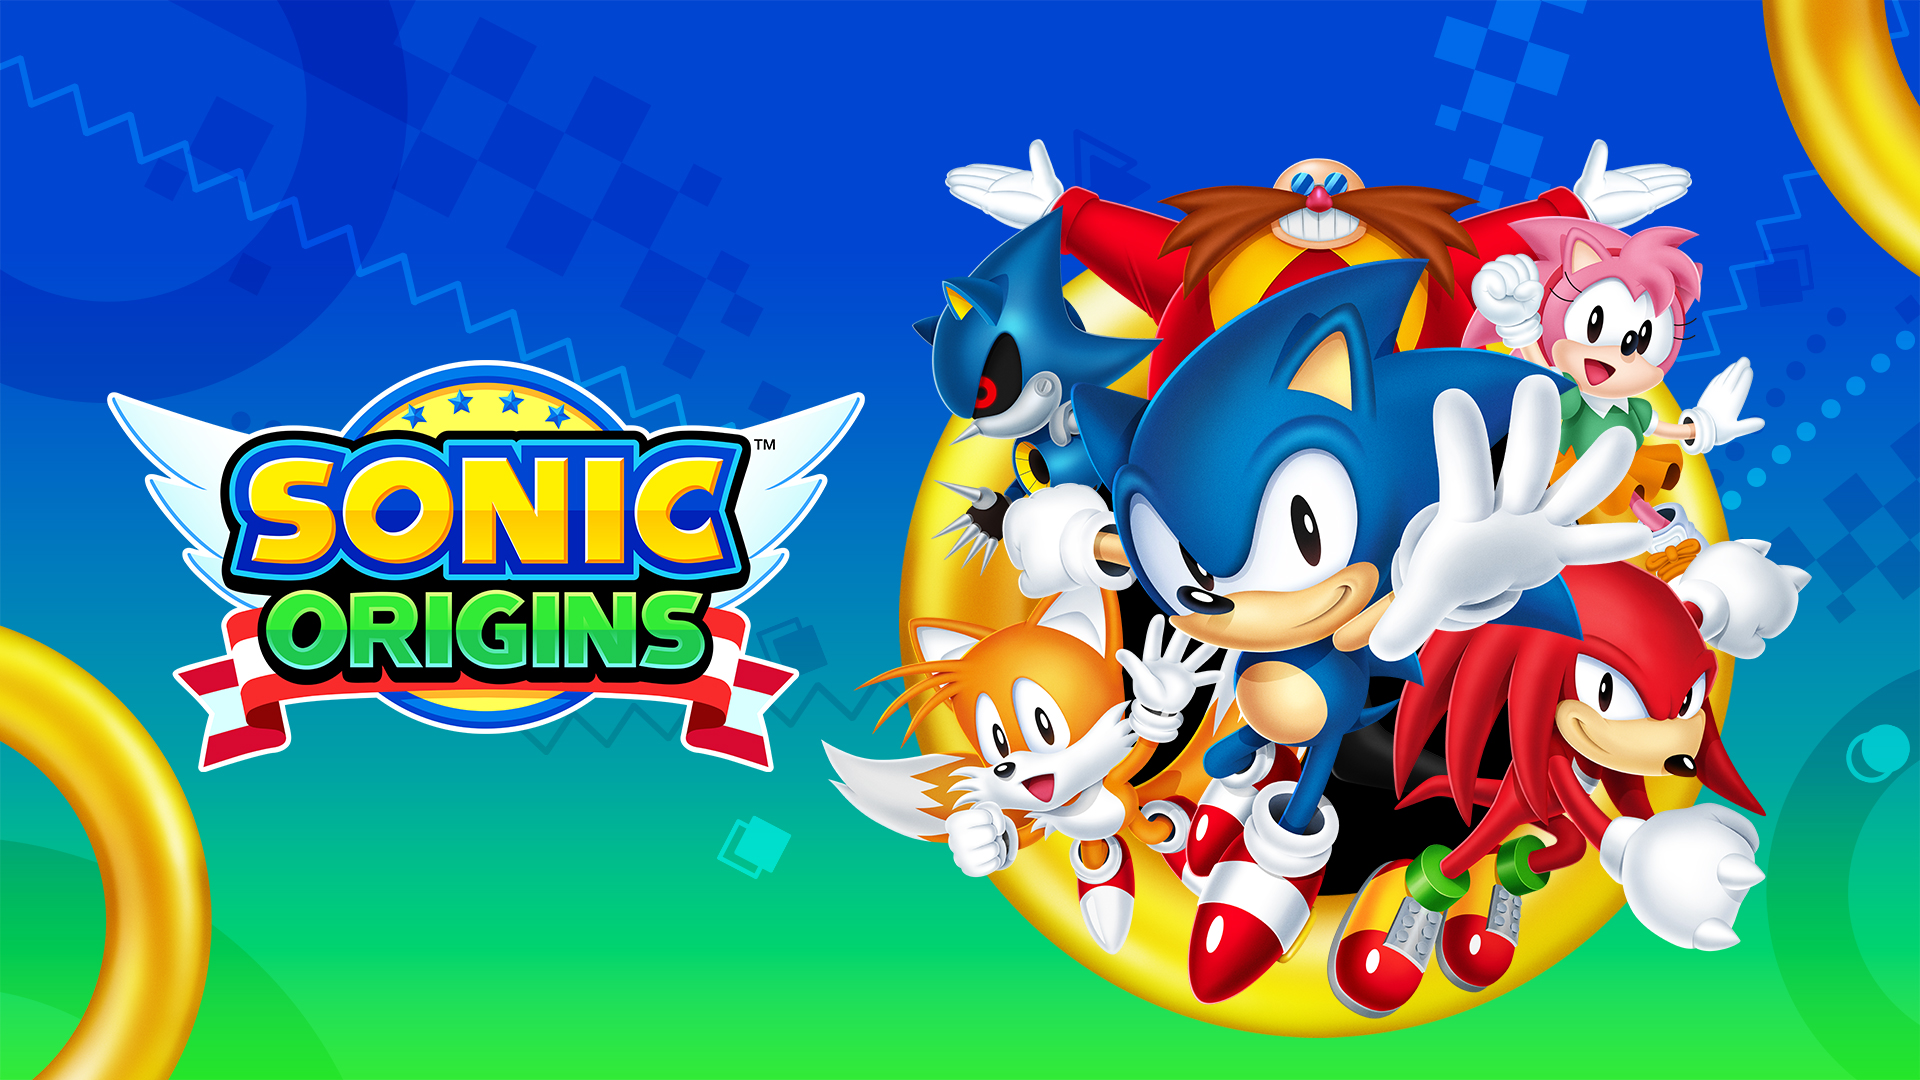 Sonic Origins bringt im Juni 4 Sonic the Hedgehog-Spiele auf Konsole und PC